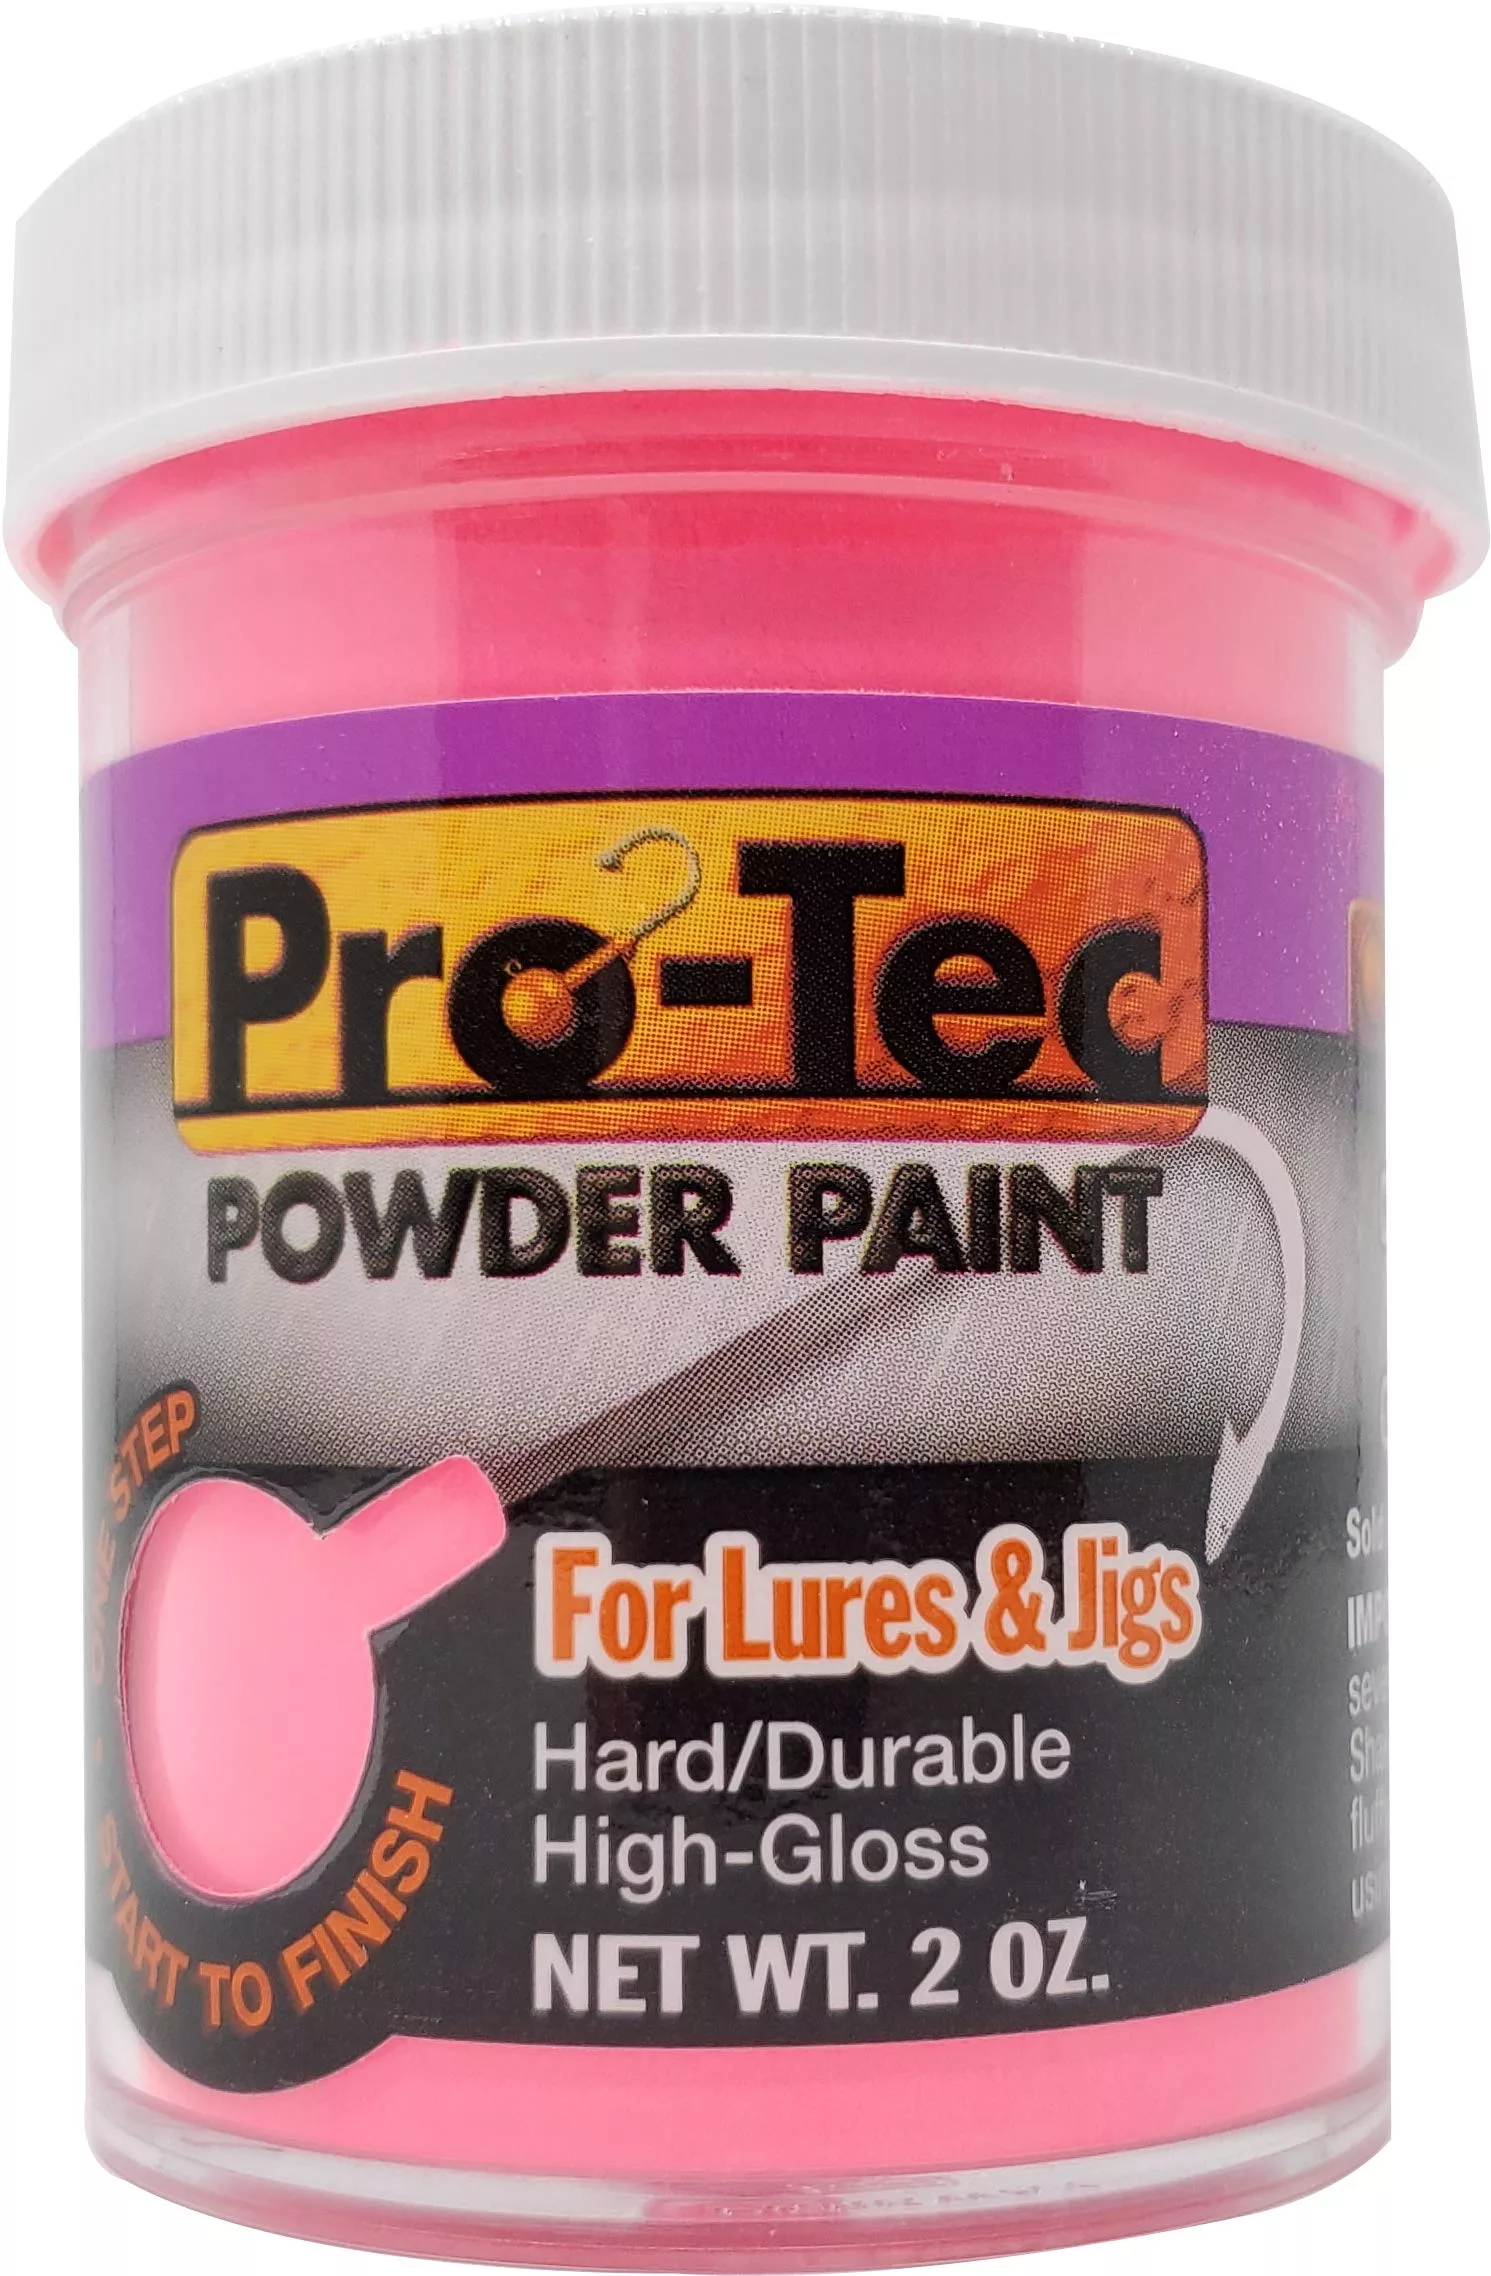 Pro-Tec Powder Paint - Jersey Hooker